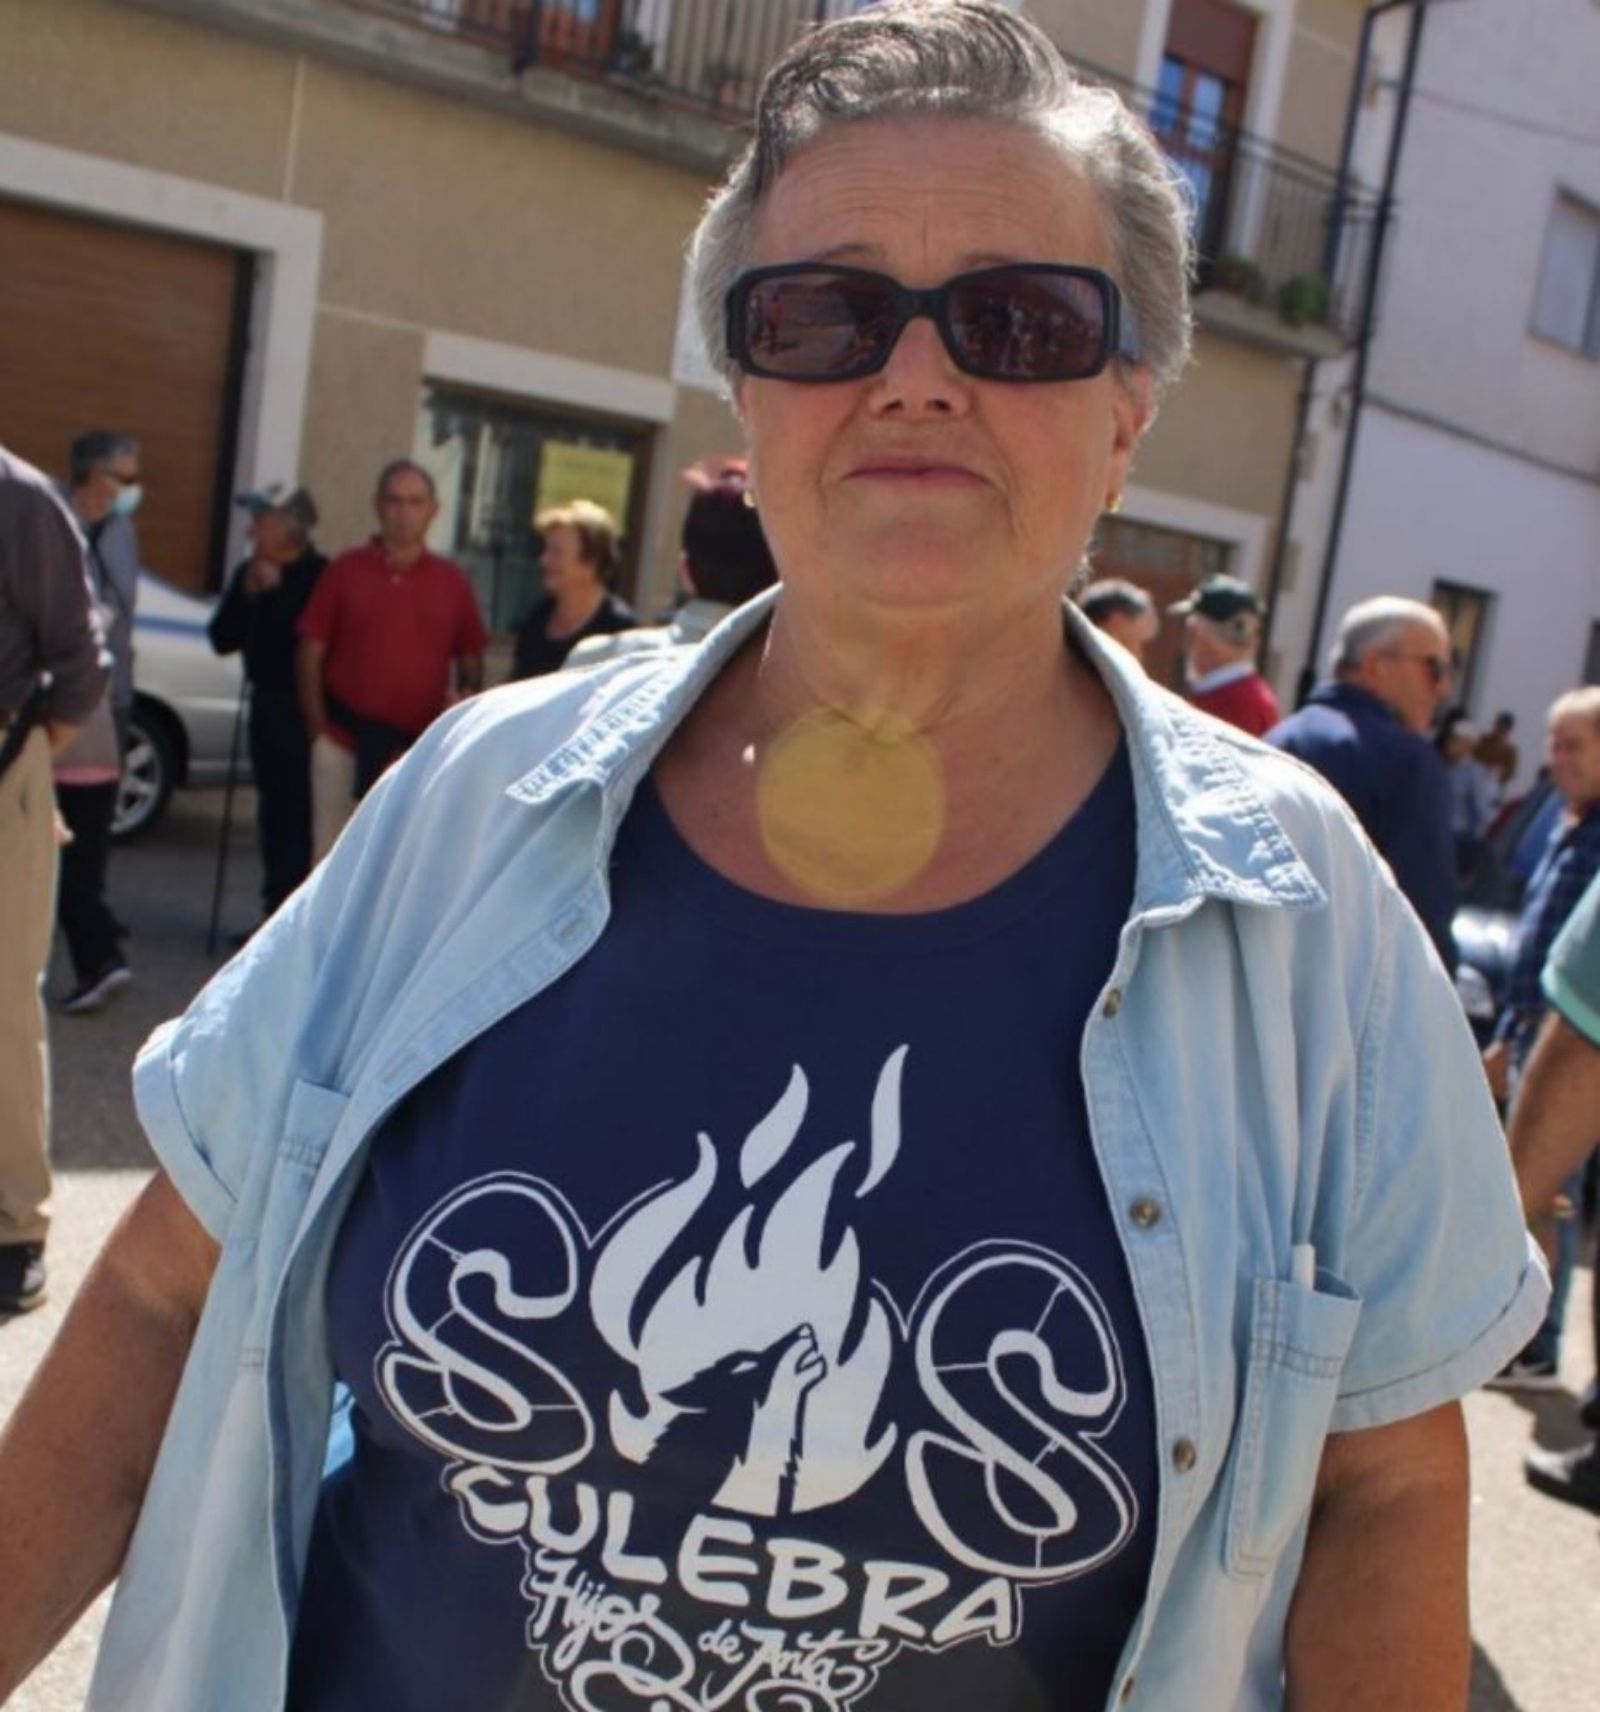 Camiseta solidaria con la Culebra de la asociación de Anta. | A. S.